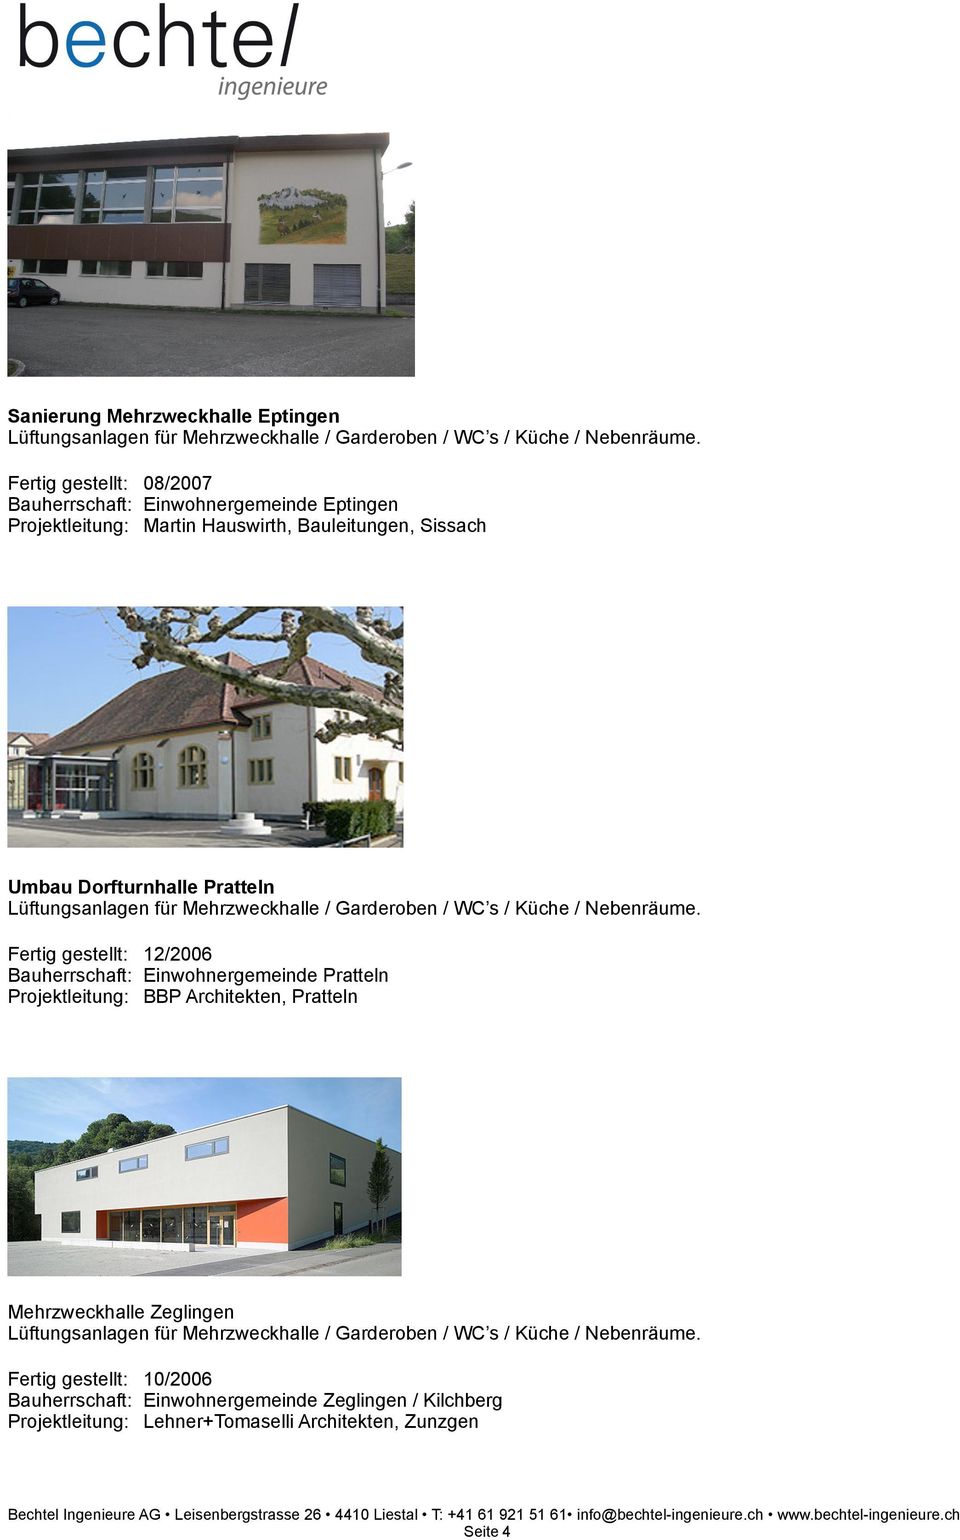 Bauherrschaft: Einwohnergemeinde Pratteln Projektleitung: BBP Architekten, Pratteln Mehrzweckhalle Zeglingen Fertig